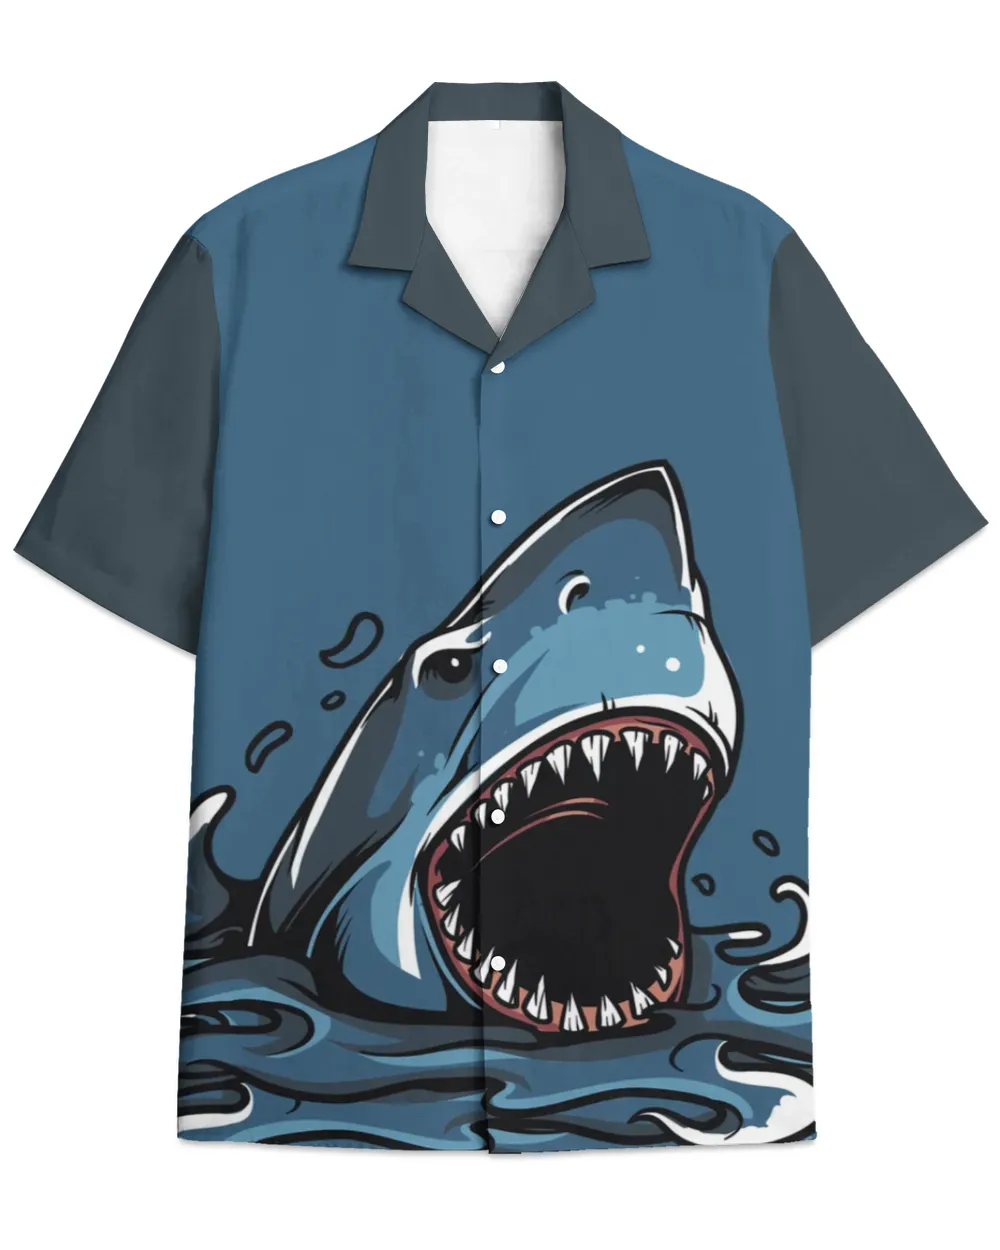 Shark-Hawaiian Shirt